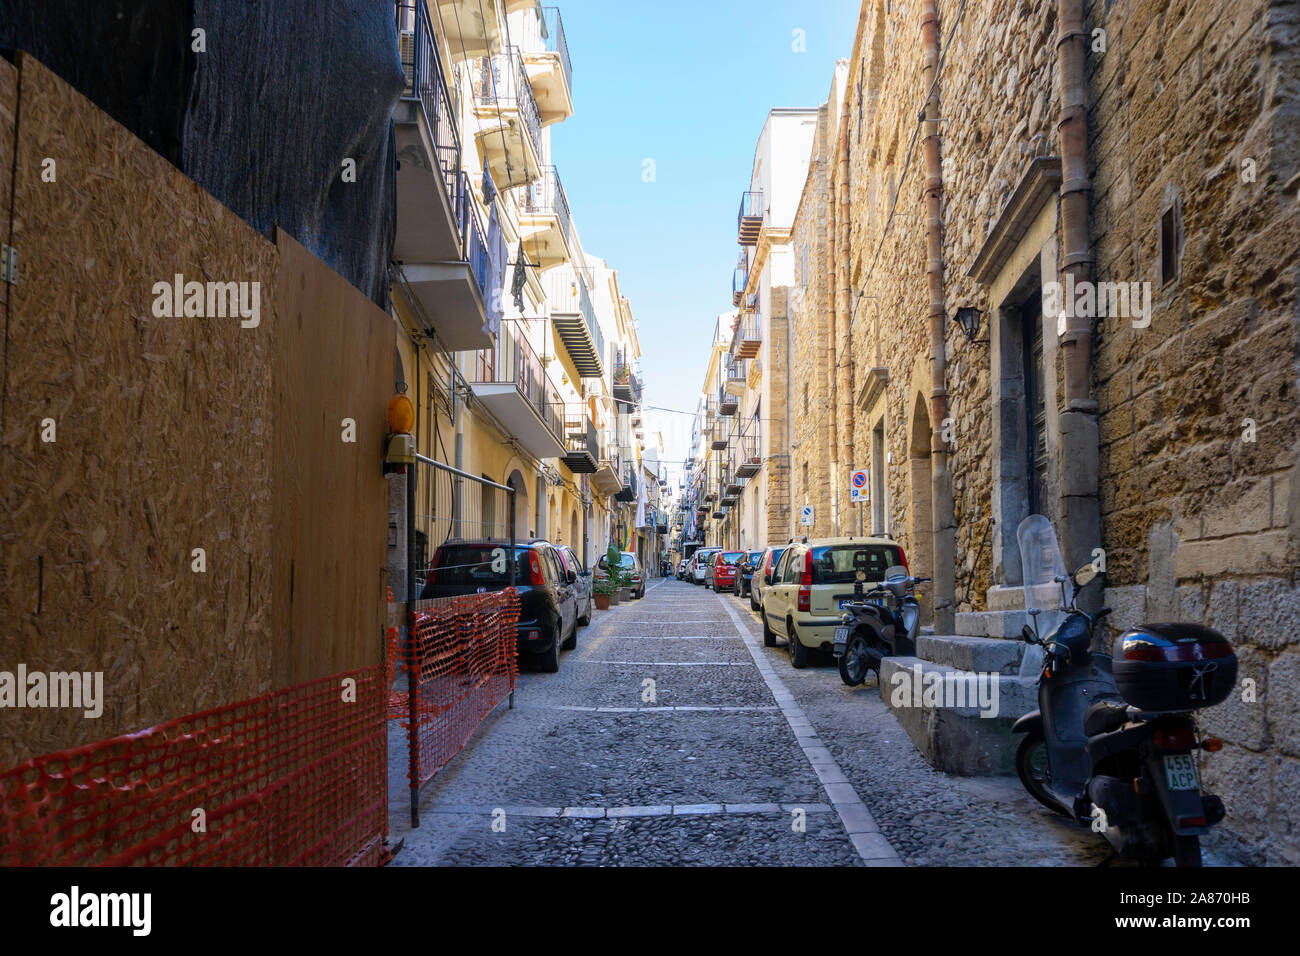 L'une des nombreuses ruelles colorées dans Celafú, Sicile, Italie, cette zone résidentielle avec des vêtements diffusée sur un balcon. Banque D'Images